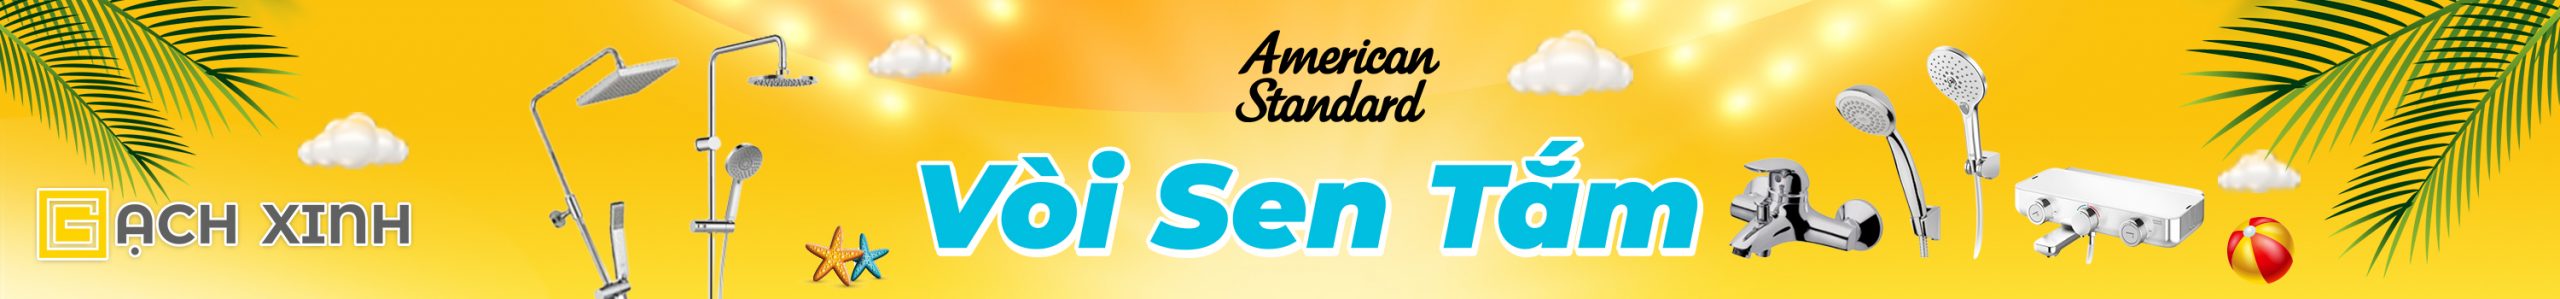 Banner Vòi Sen Tắm - Sen Cây American Standard